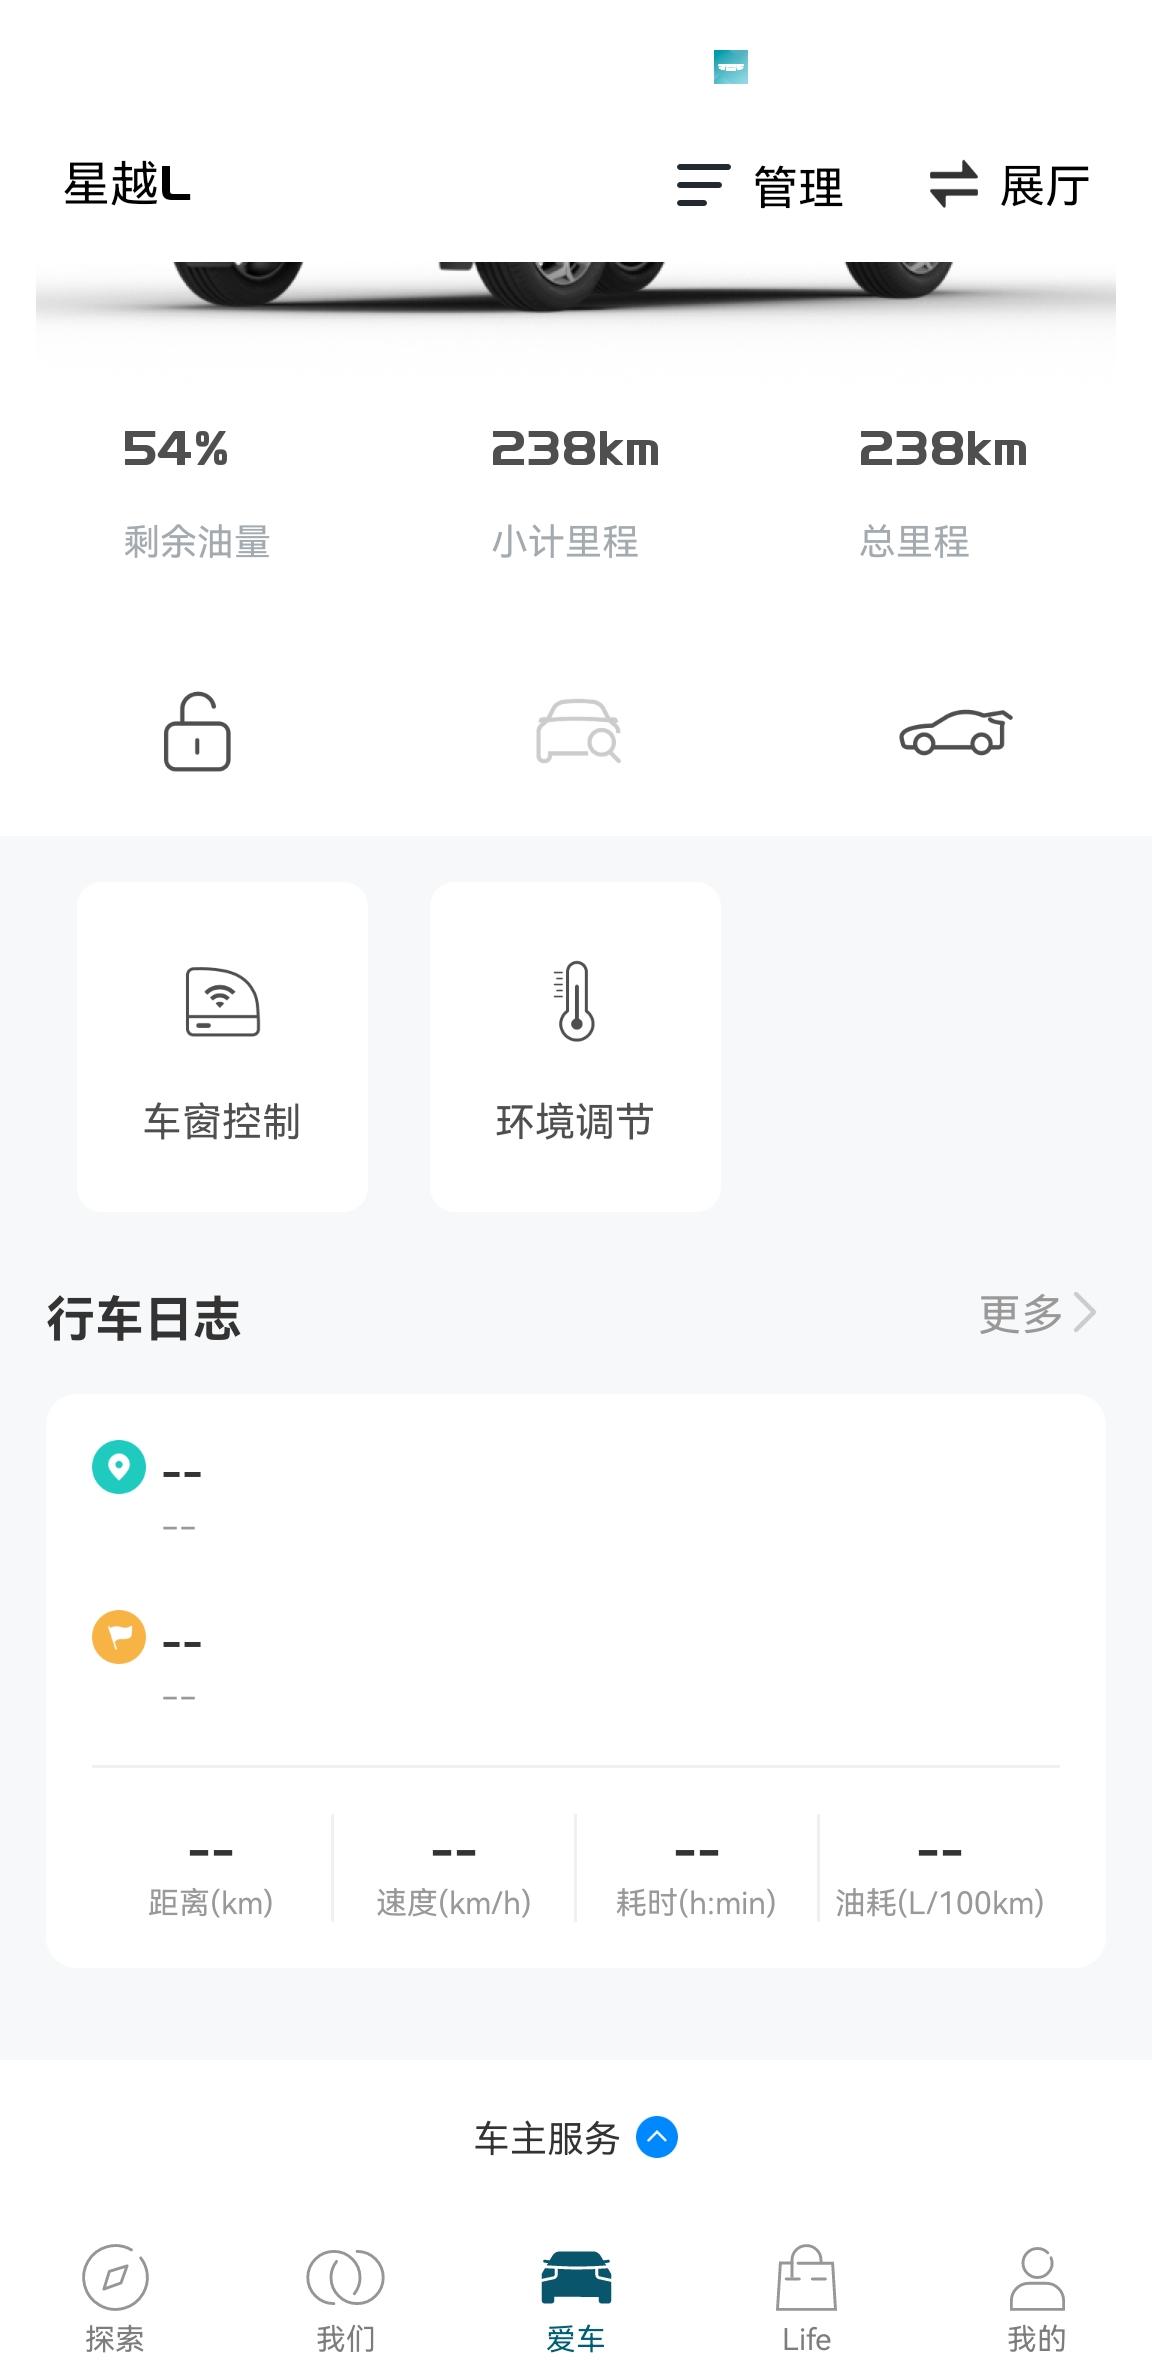 吉利星越L 吉利app不显示车辆行驶信息新车刚买来的时候，app会显示车辆行驶信息。后来不知道改了啥设置，现在不显示了